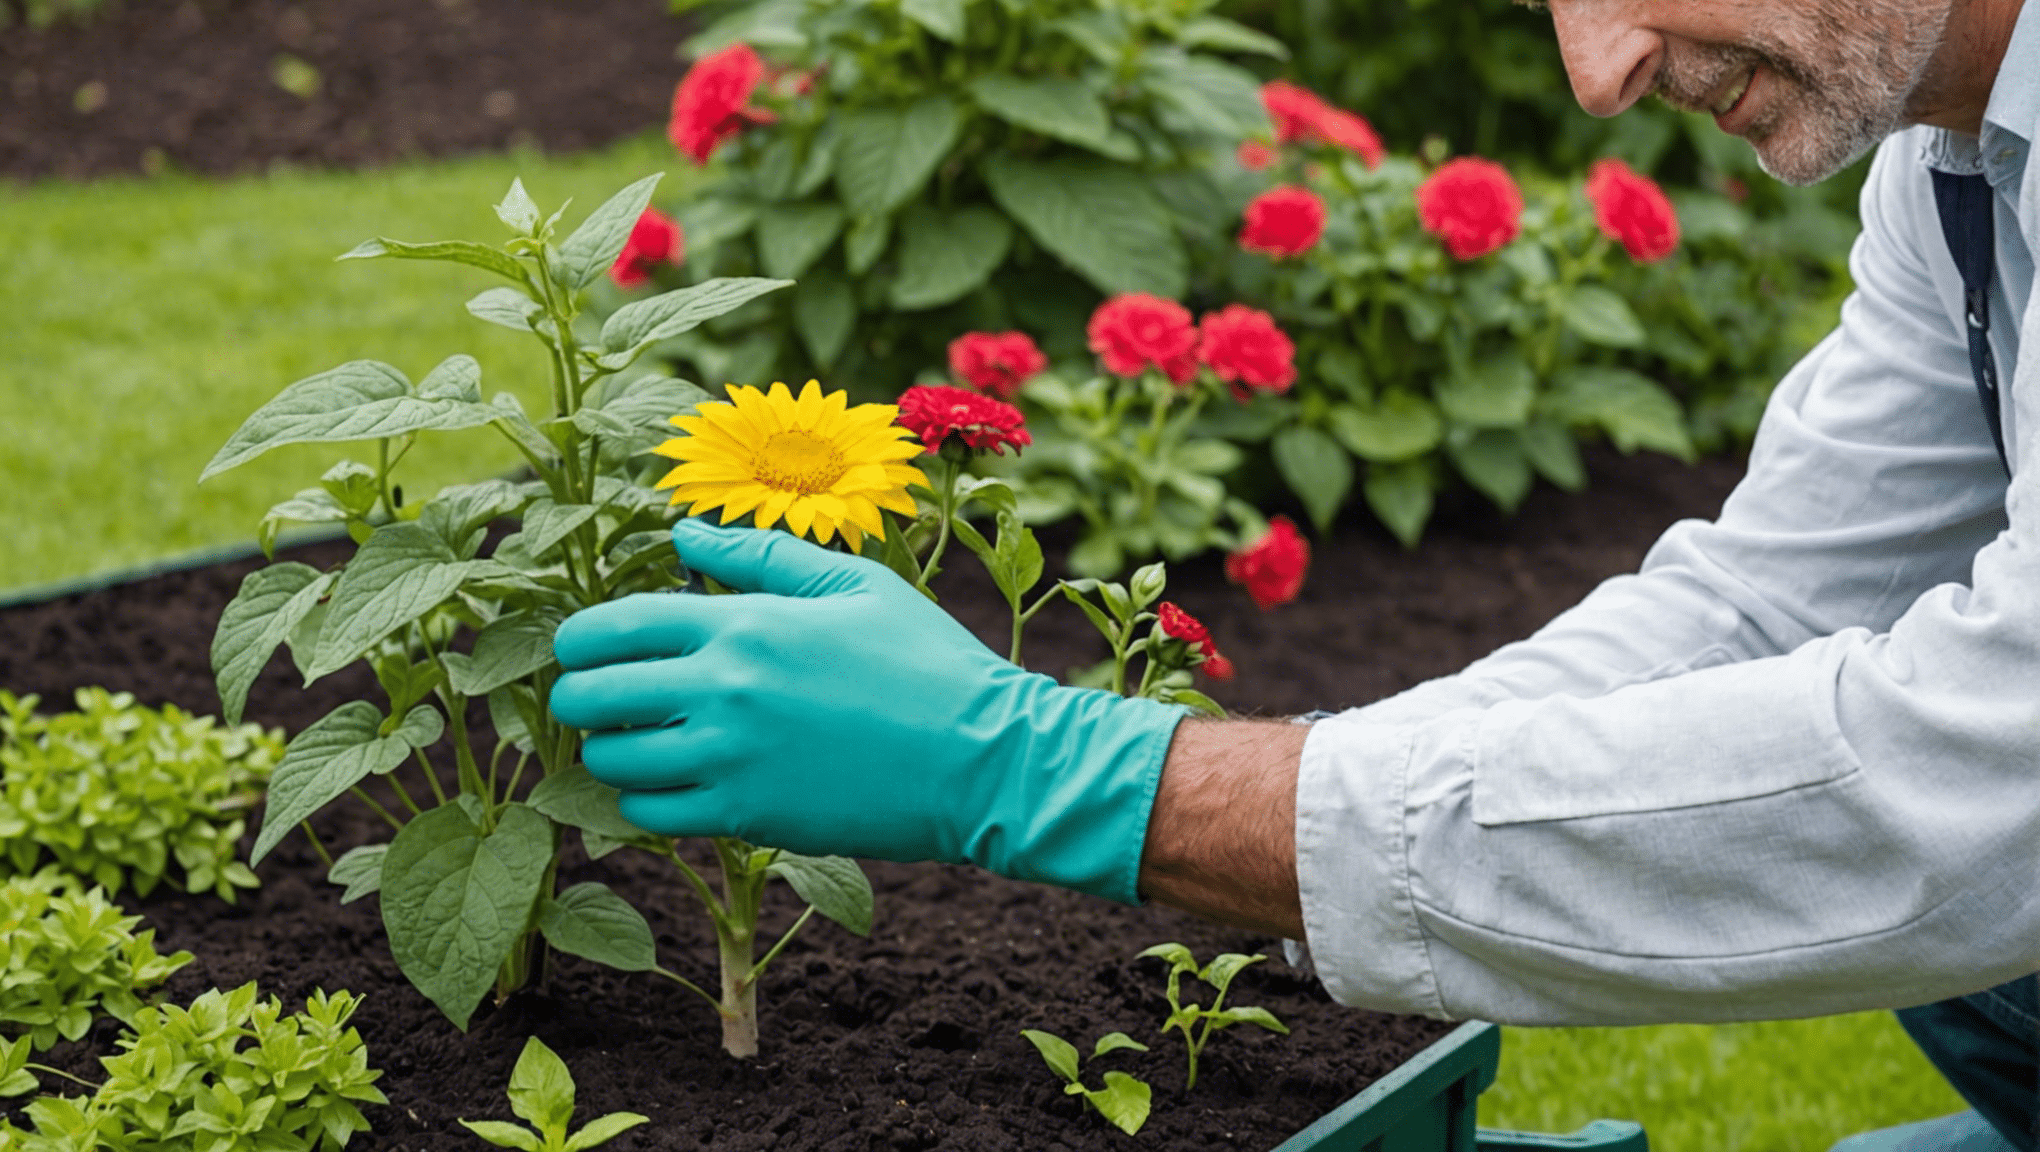 découvrez si les manchons de jardinage en valent la peine grâce à cet examen complet. obtenez des informations sur les avantages et les inconvénients pour prendre une décision éclairée.